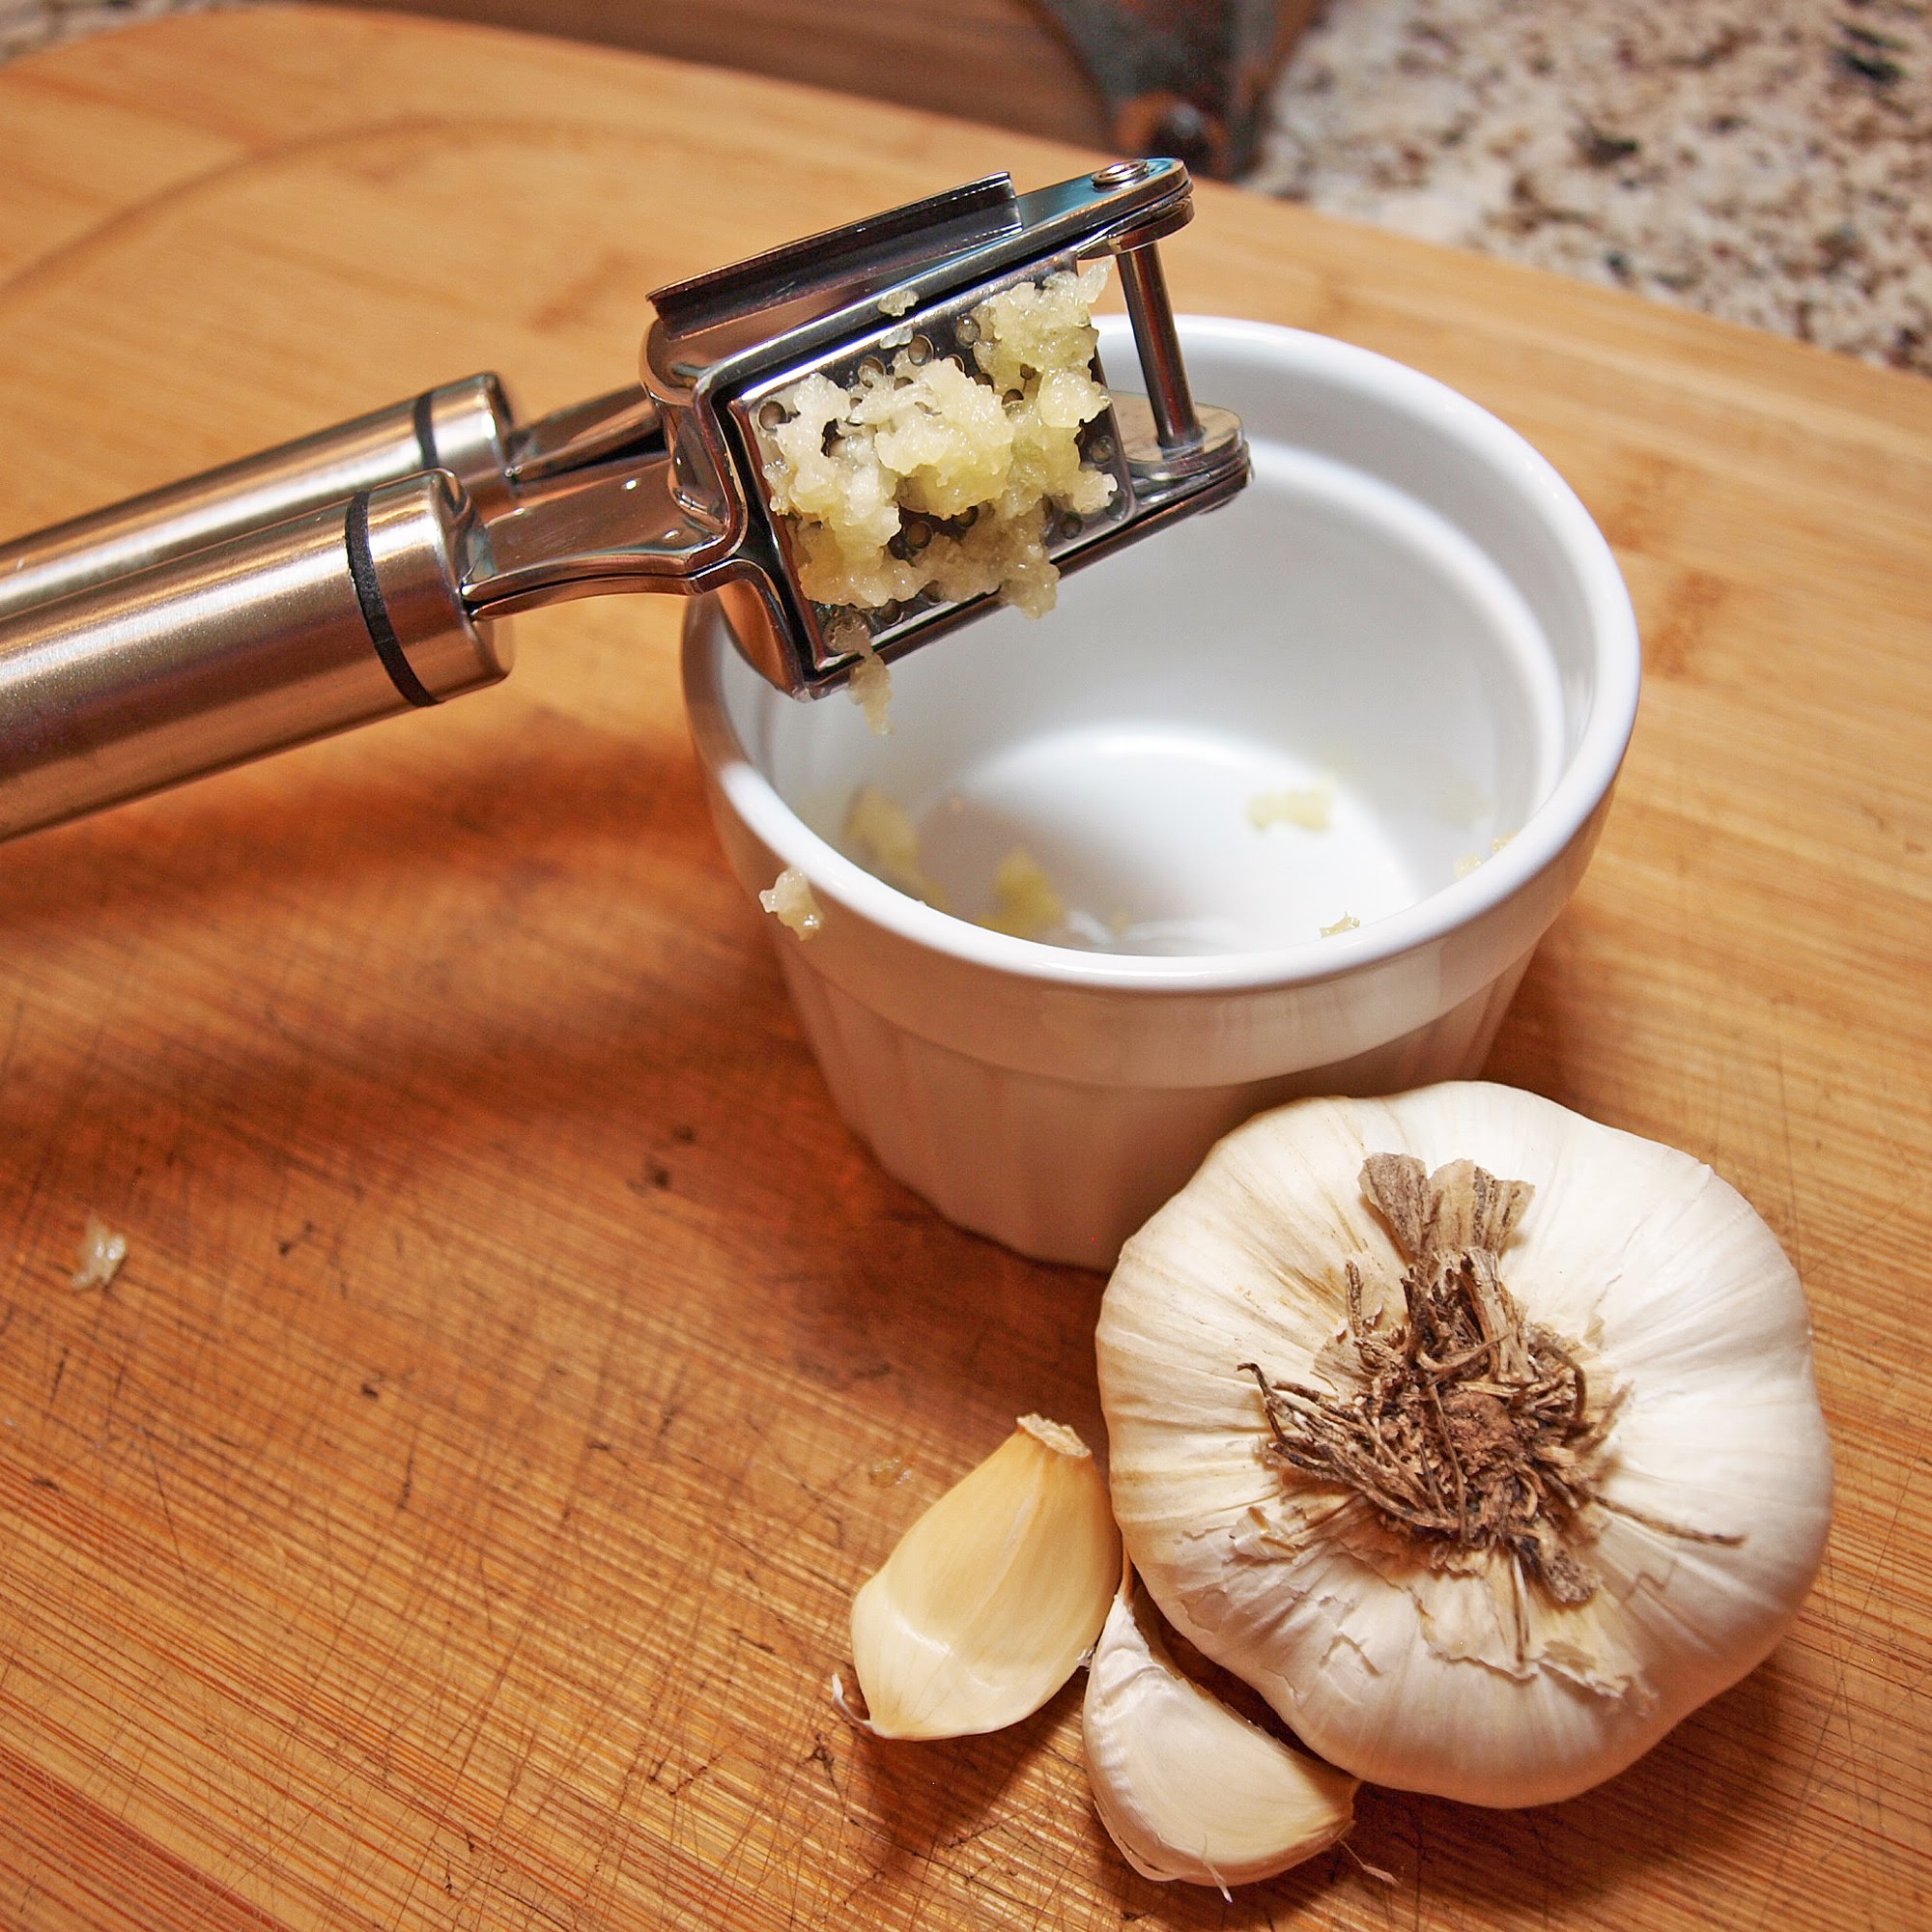 Best Garlic Press Review | Stainless Steel Garlic Mincer On Amazon ...